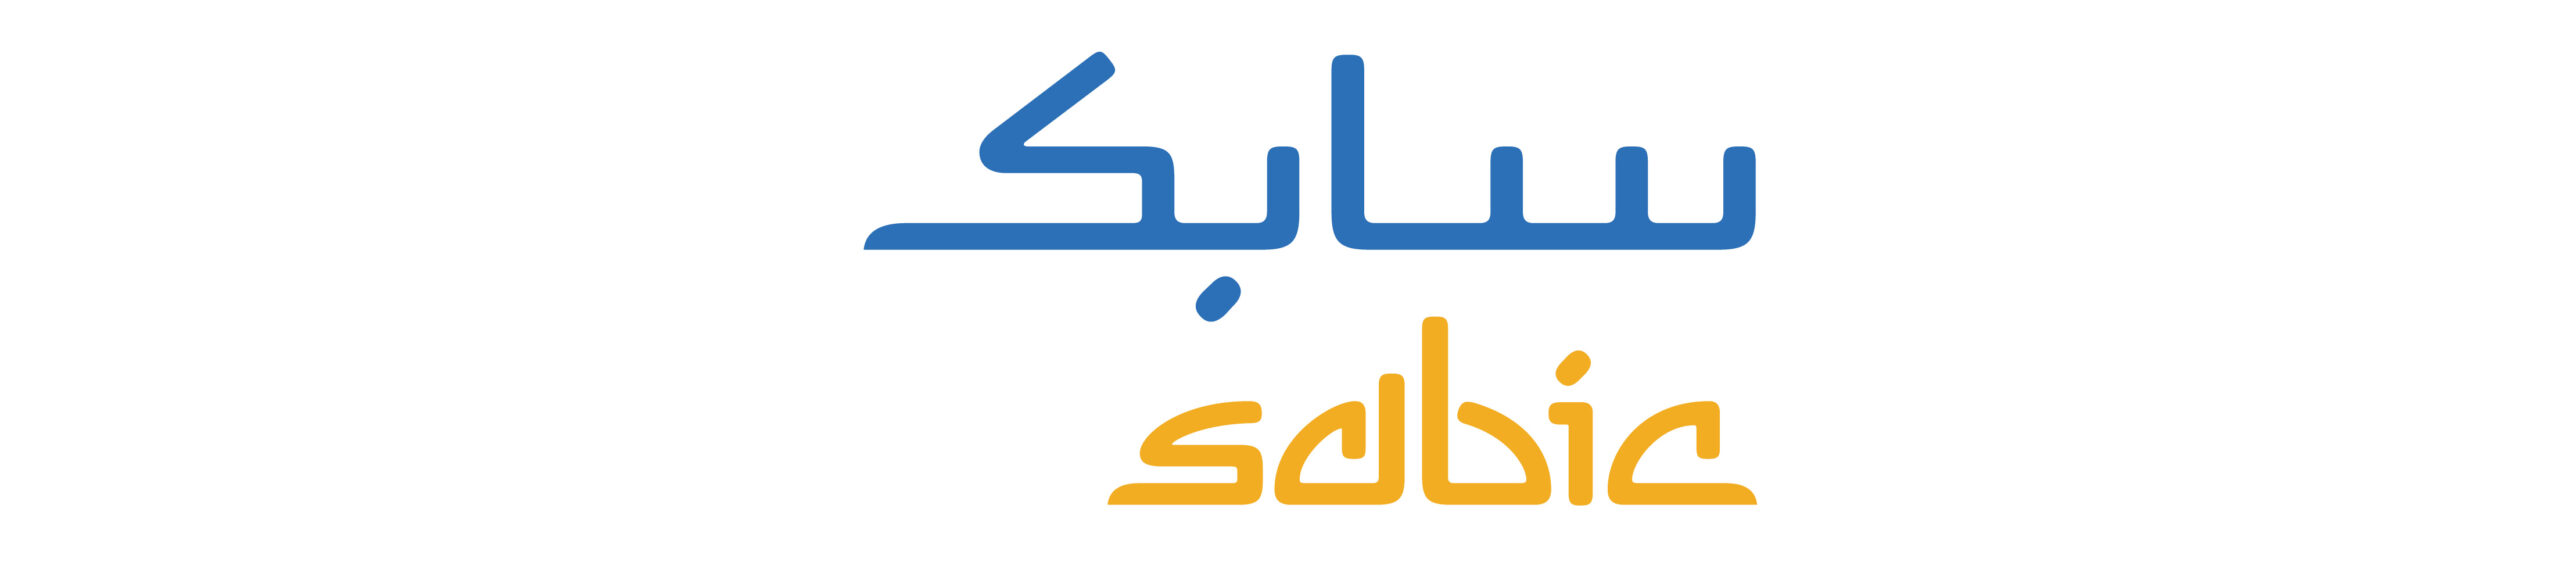 logo for website-03